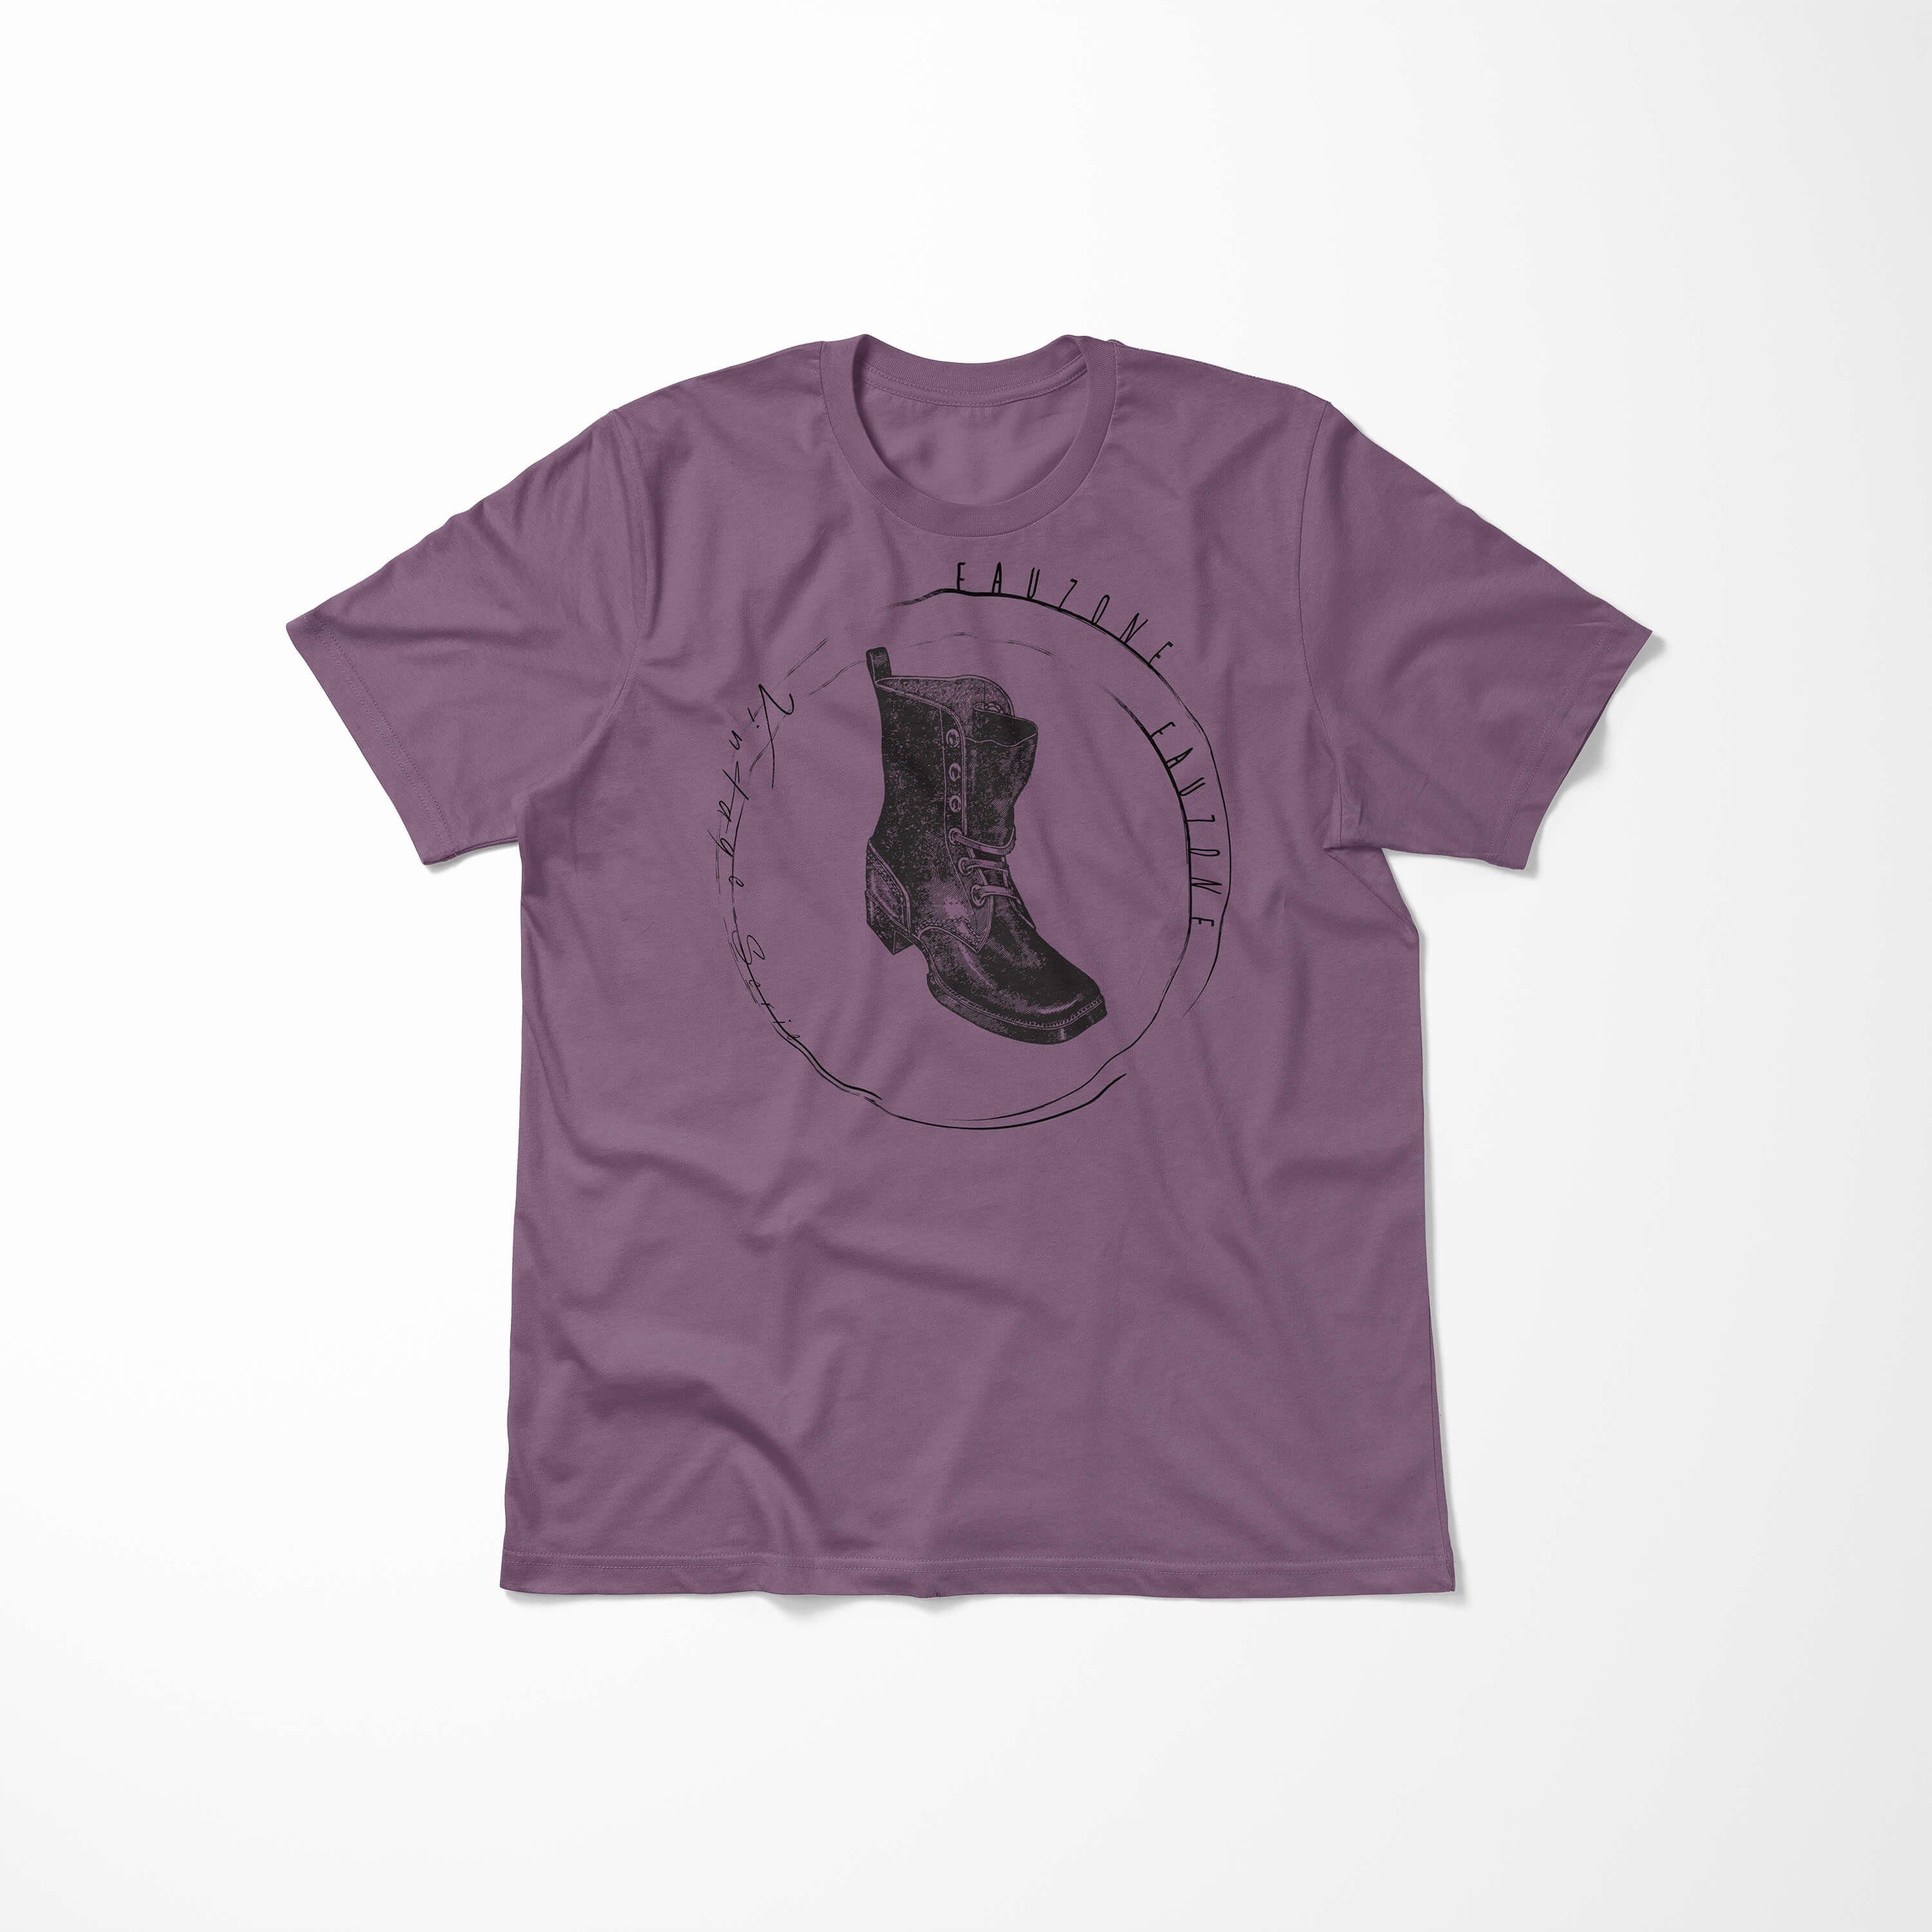 Stiefel Sinus T-Shirt Shiraz Art Vintage T-Shirt Herren